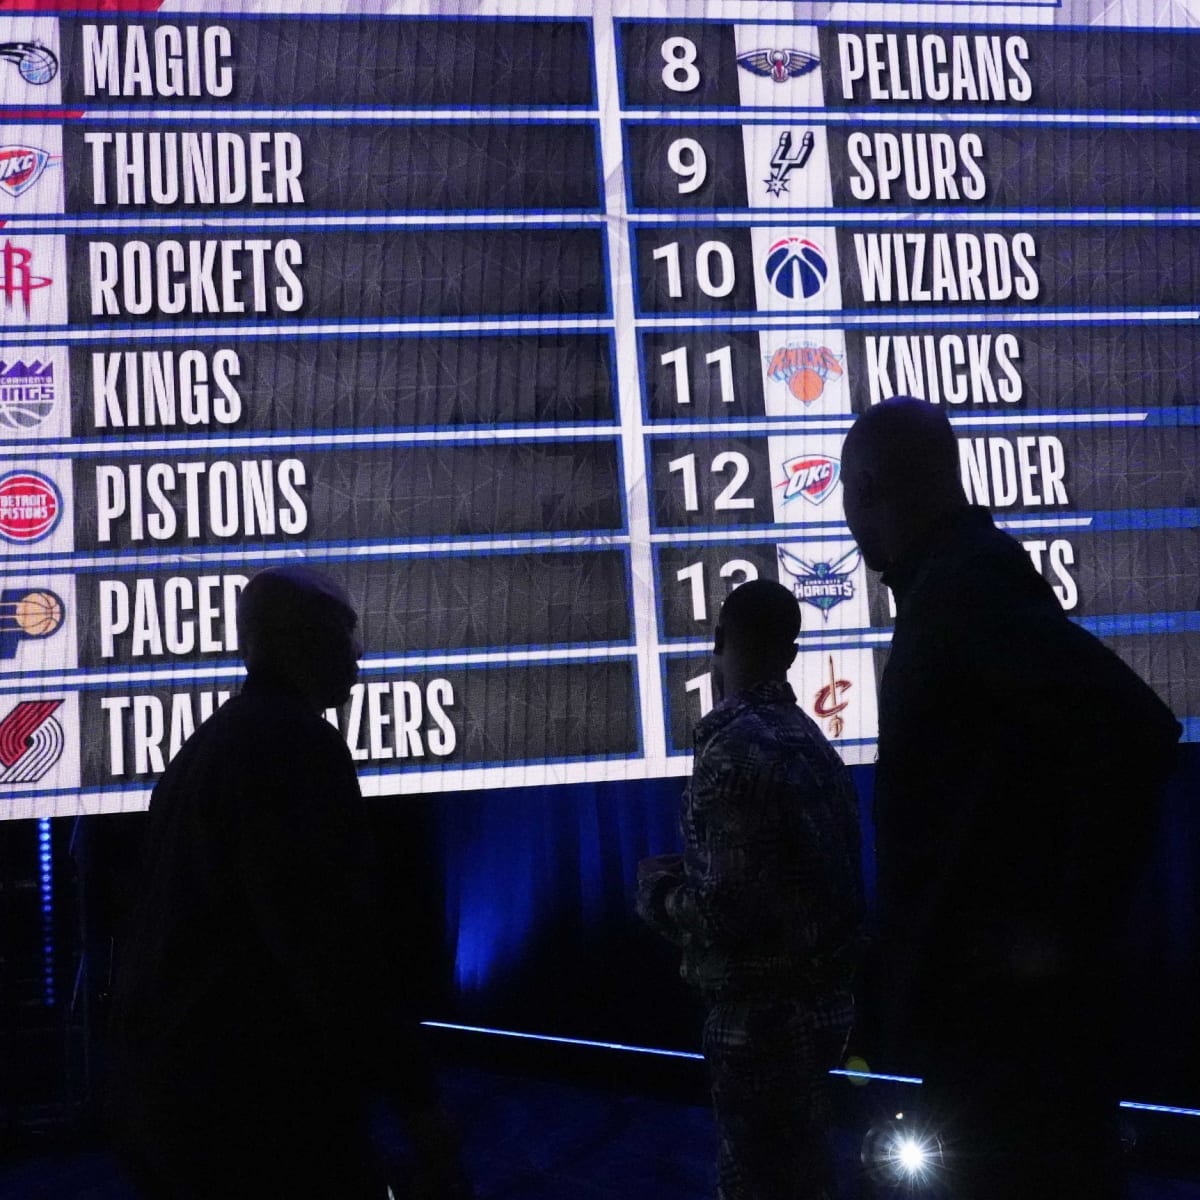 NBA Mock Draft 2022: Magic select Paolo Banchero with No. 1 pick; Thunder,  Kings make biggest lottery jumps